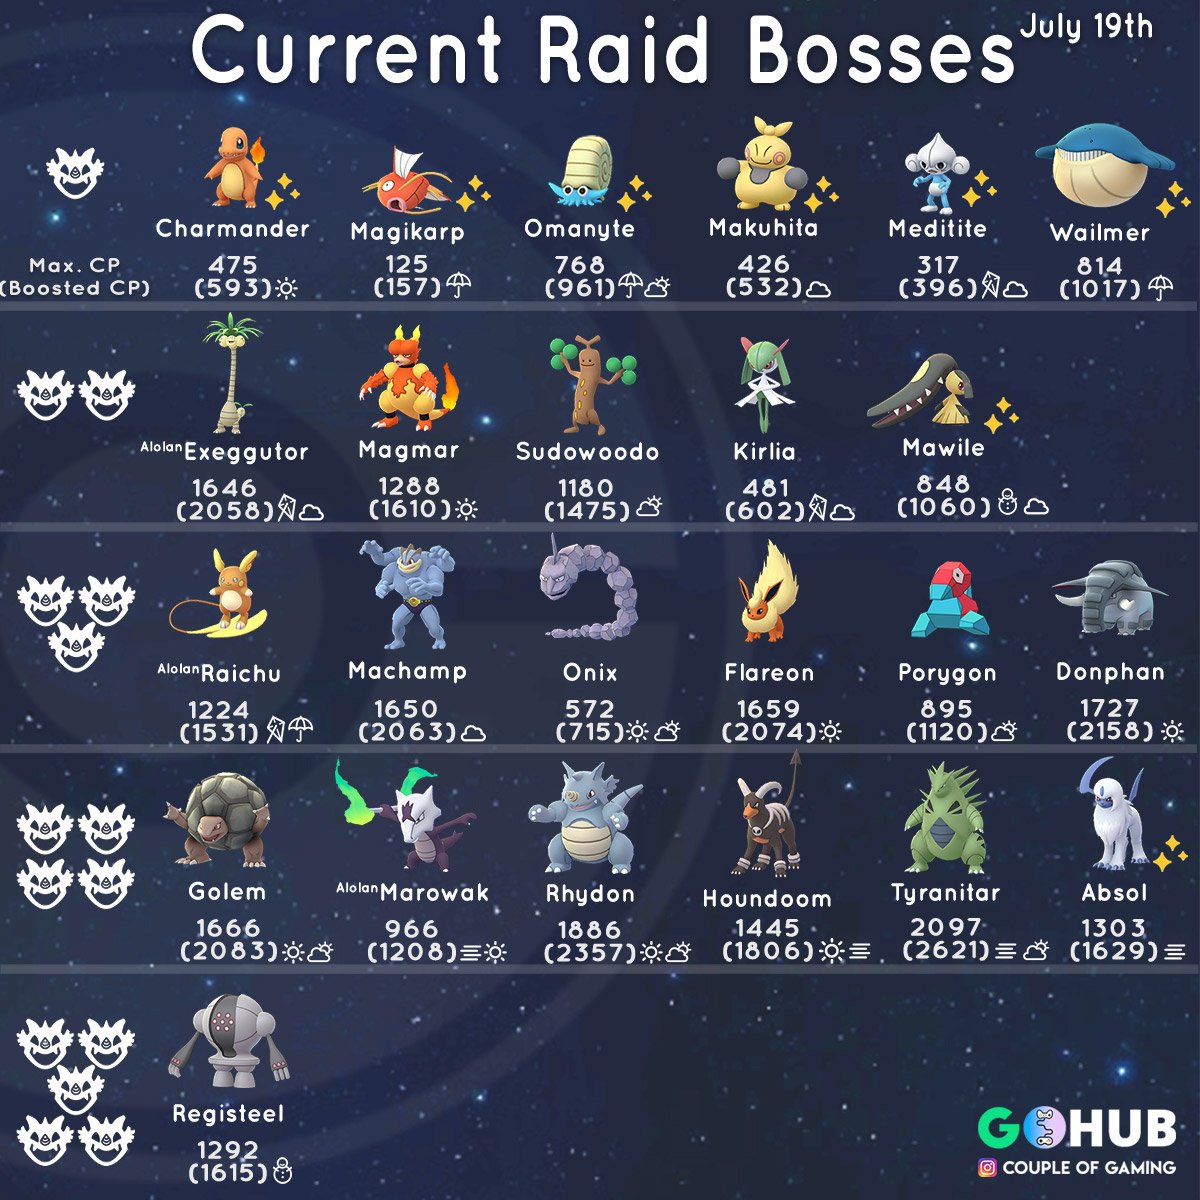 pokemon go gen 5 raid bosses